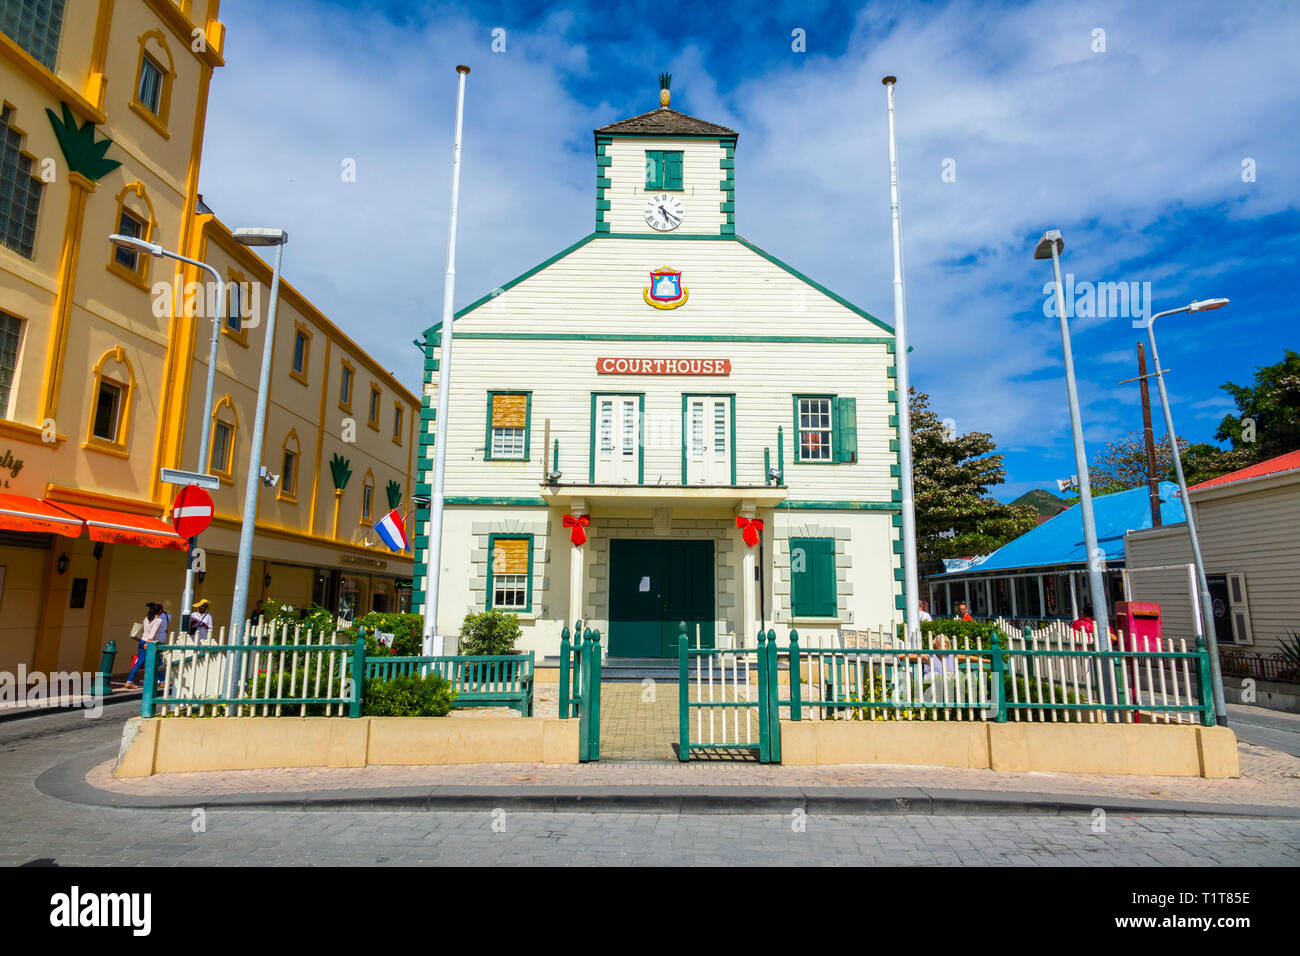 Le palais de justice sur un bateau de croisière dans les Caraïbes destination Philipsburg est la principale ville et capitale du pays de Saint Sint Maarten. La ville j Banque D'Images